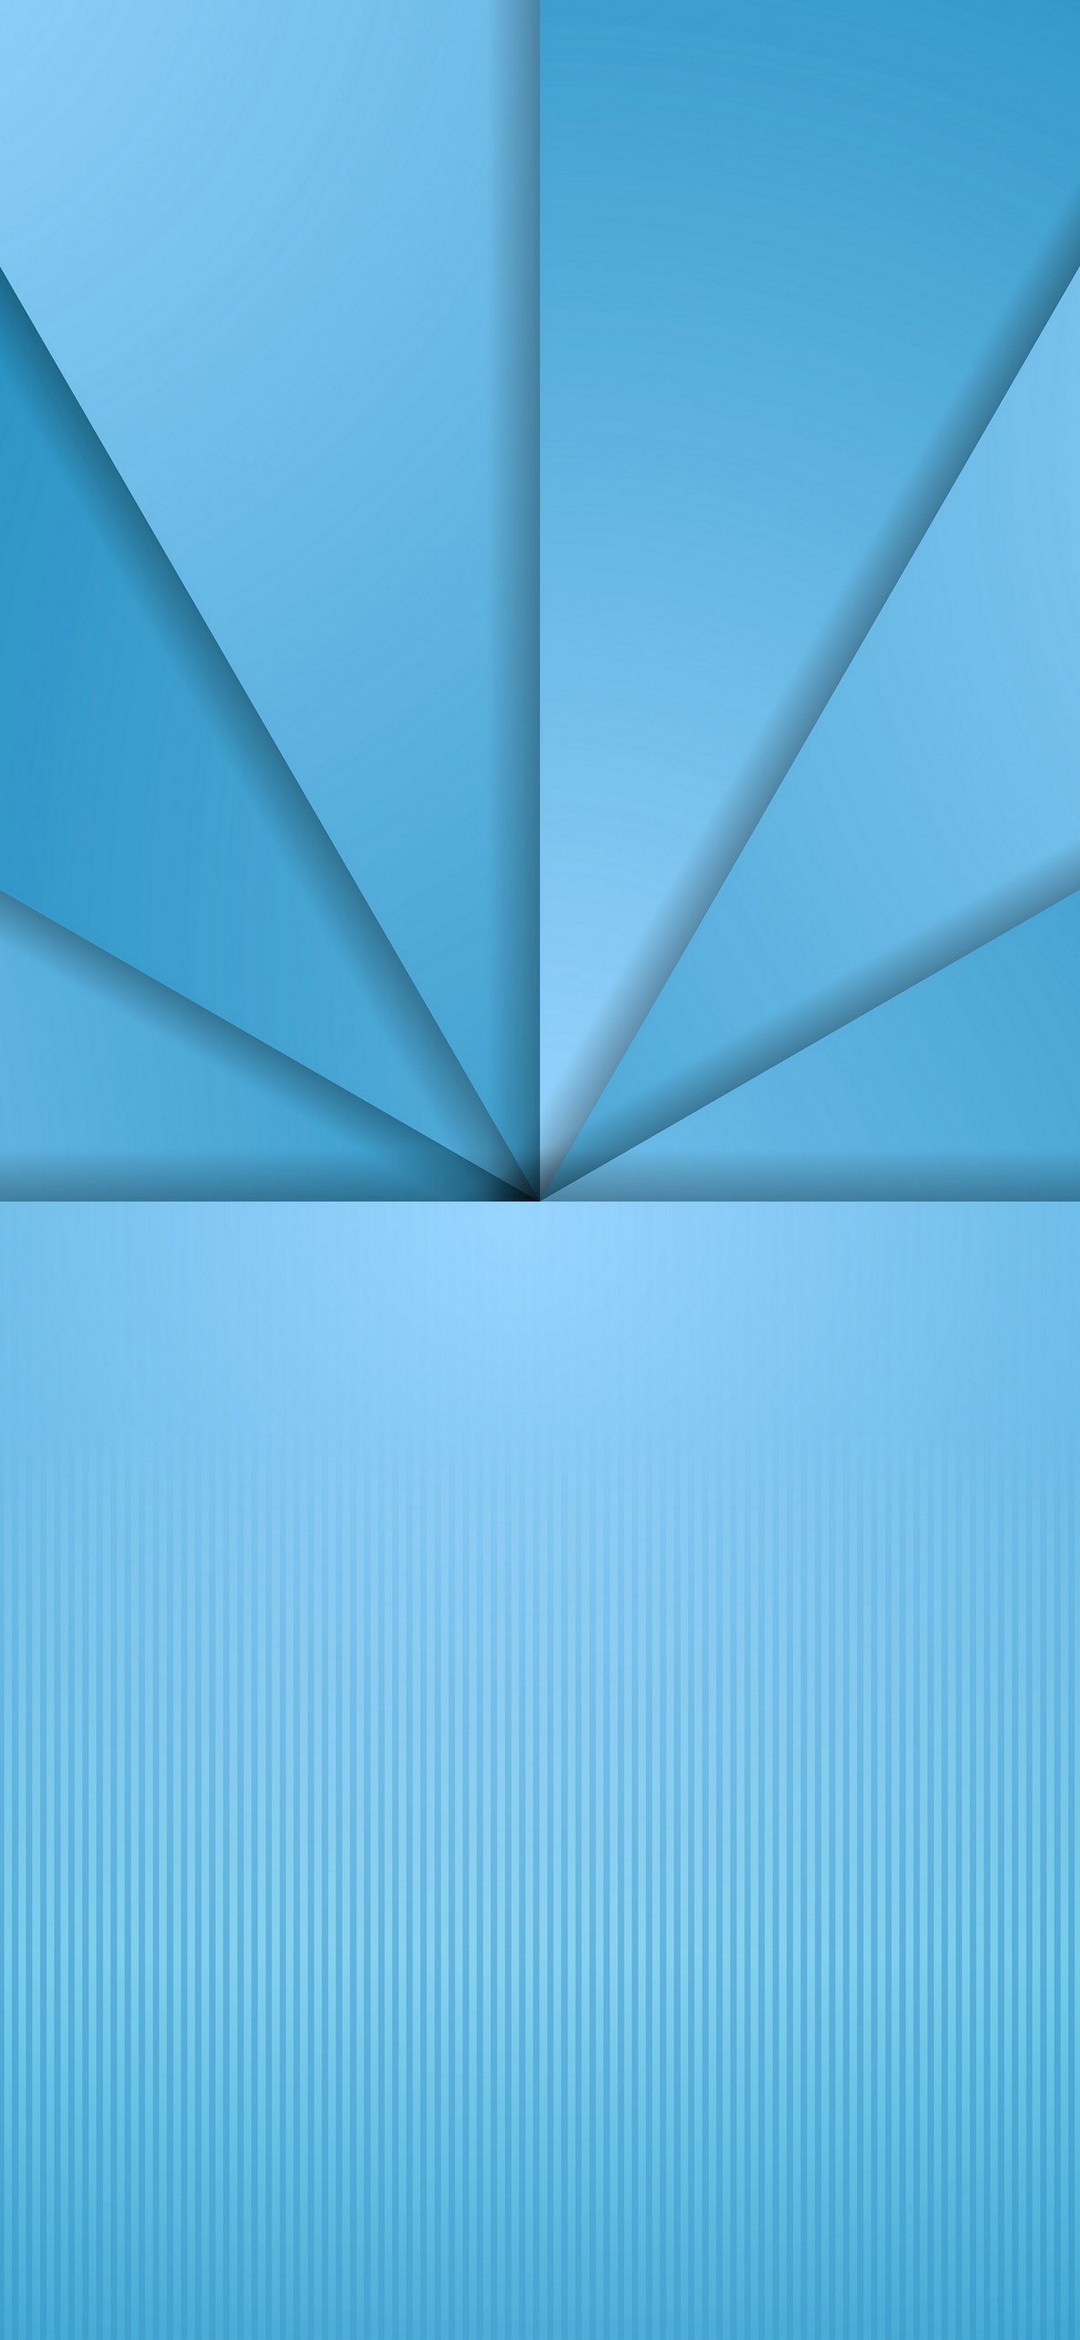 青いグラデーションの三角と縦のボーダー Google Pixel 5 Android スマホ壁紙 待ち受け スマラン